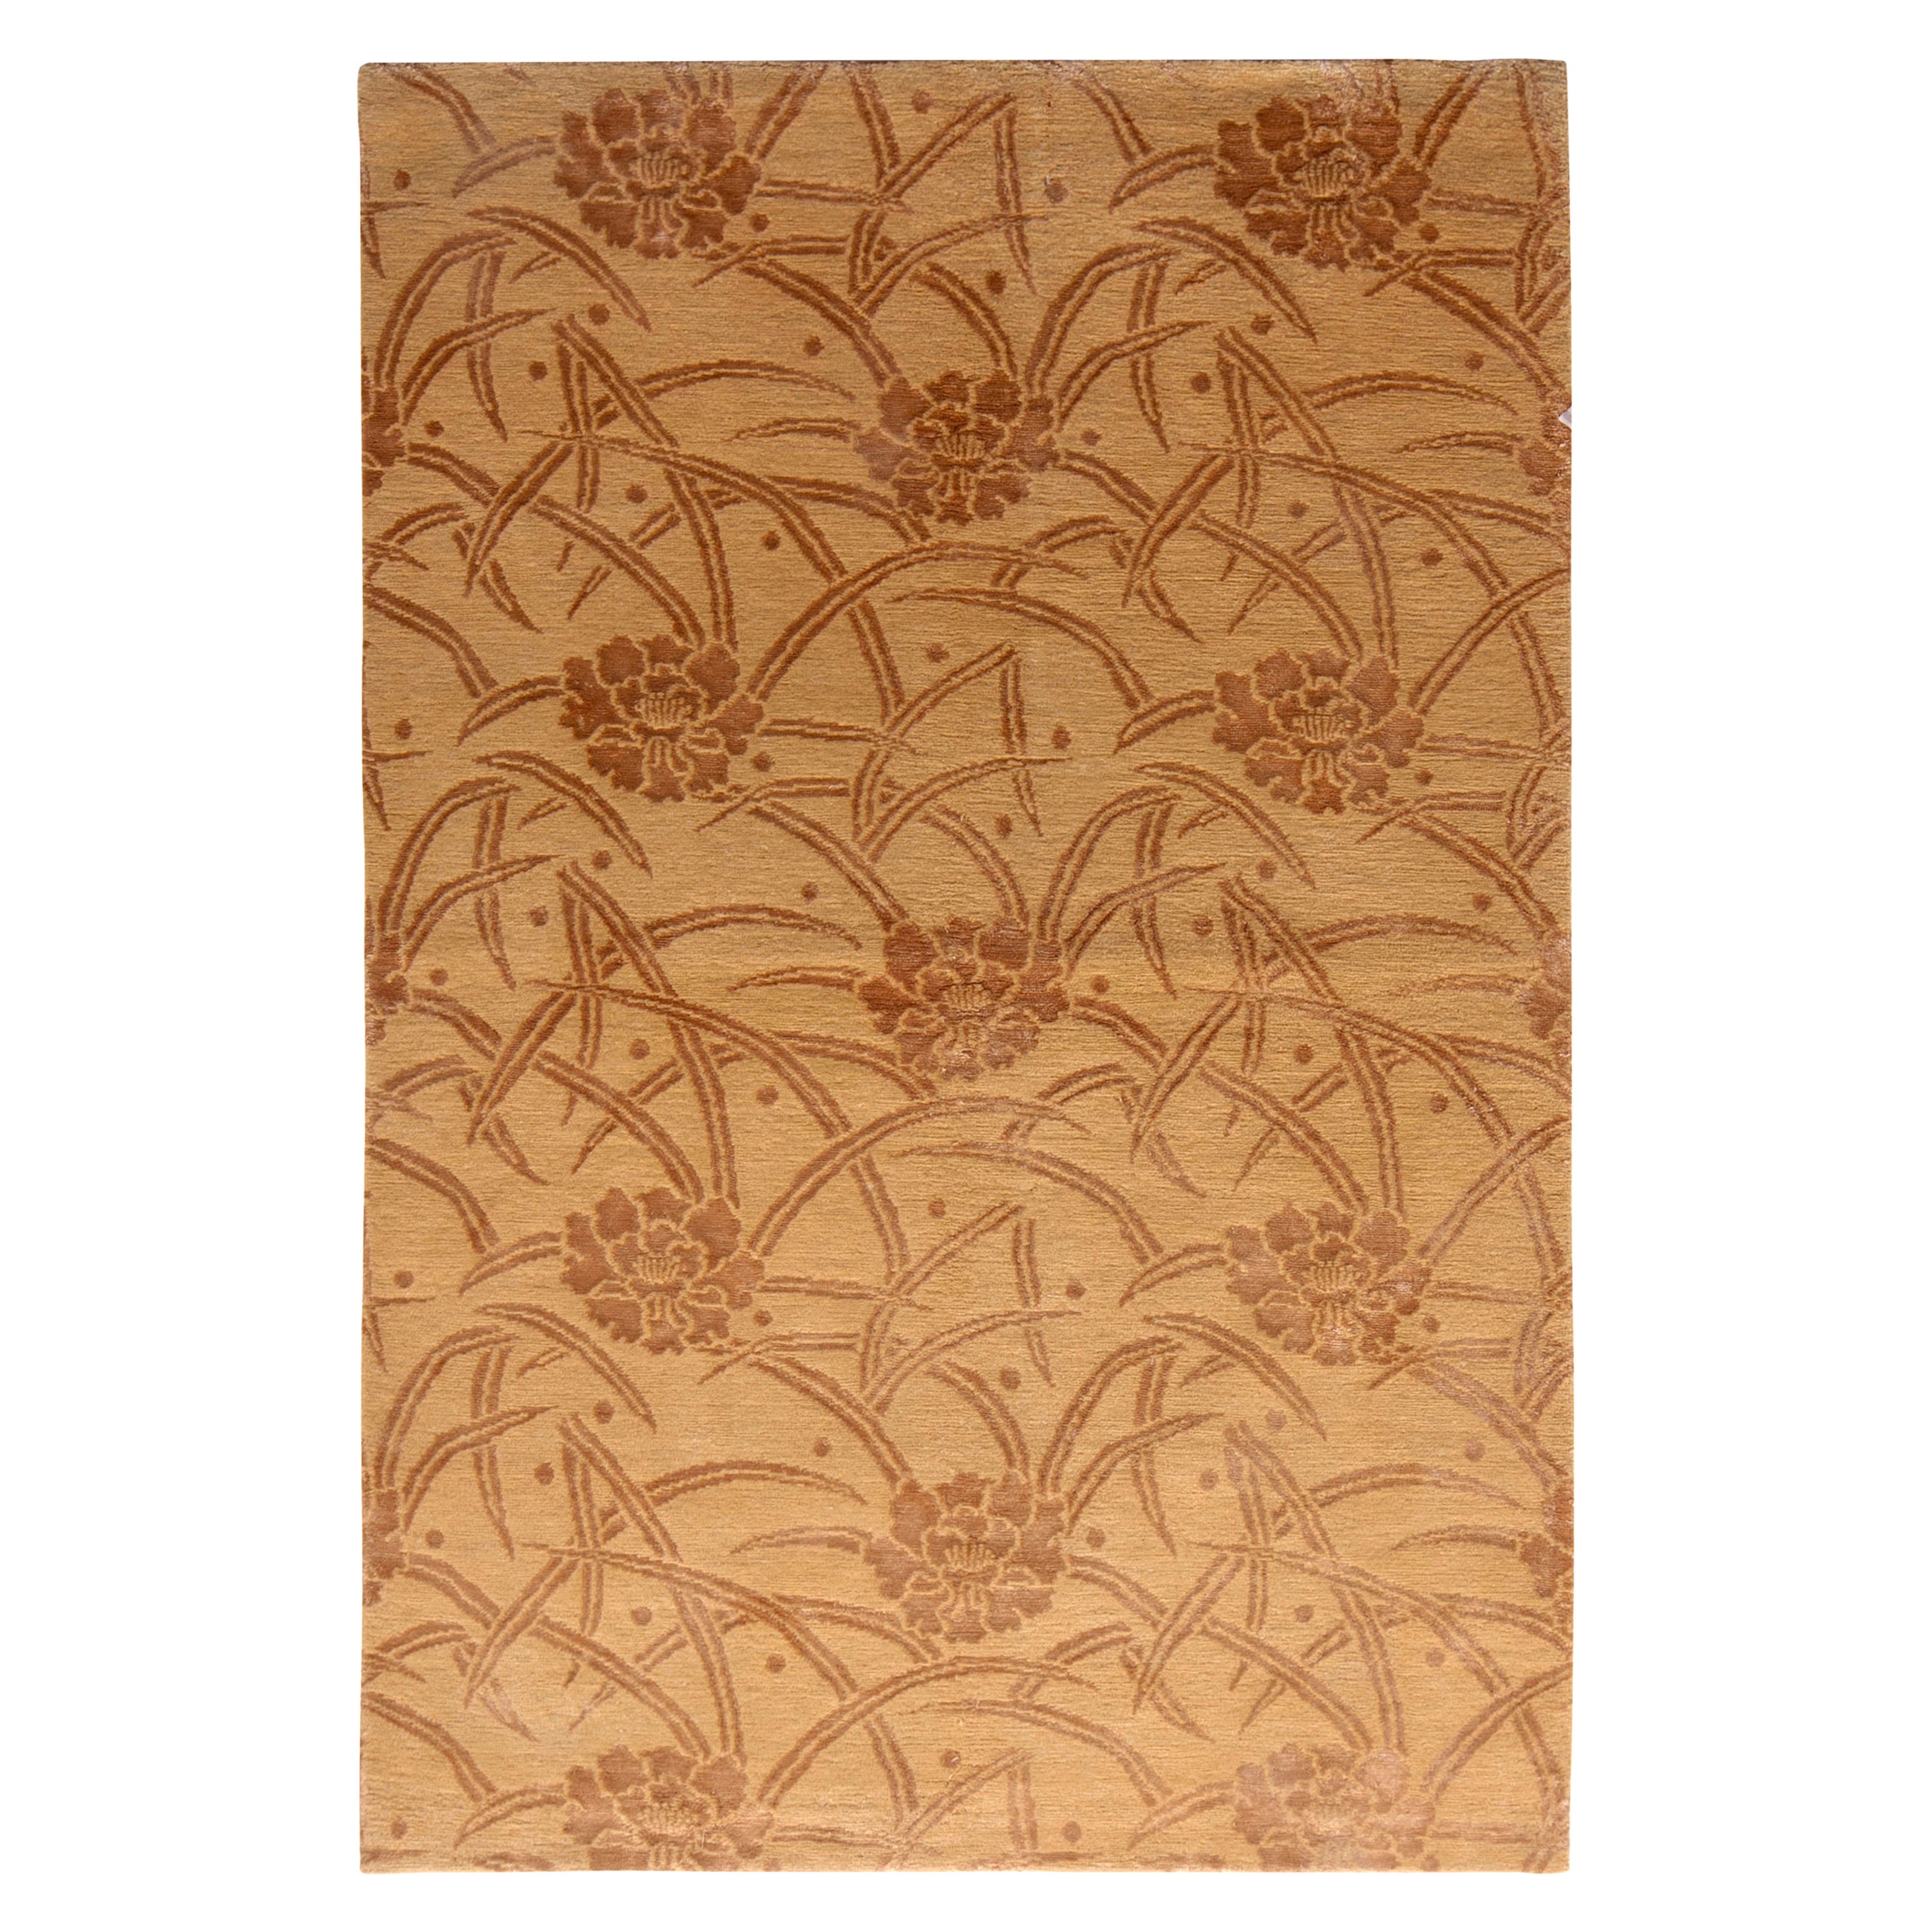 Rug & Kilim's Teppich im europäischen Stil Beige Braun Blumenmuster